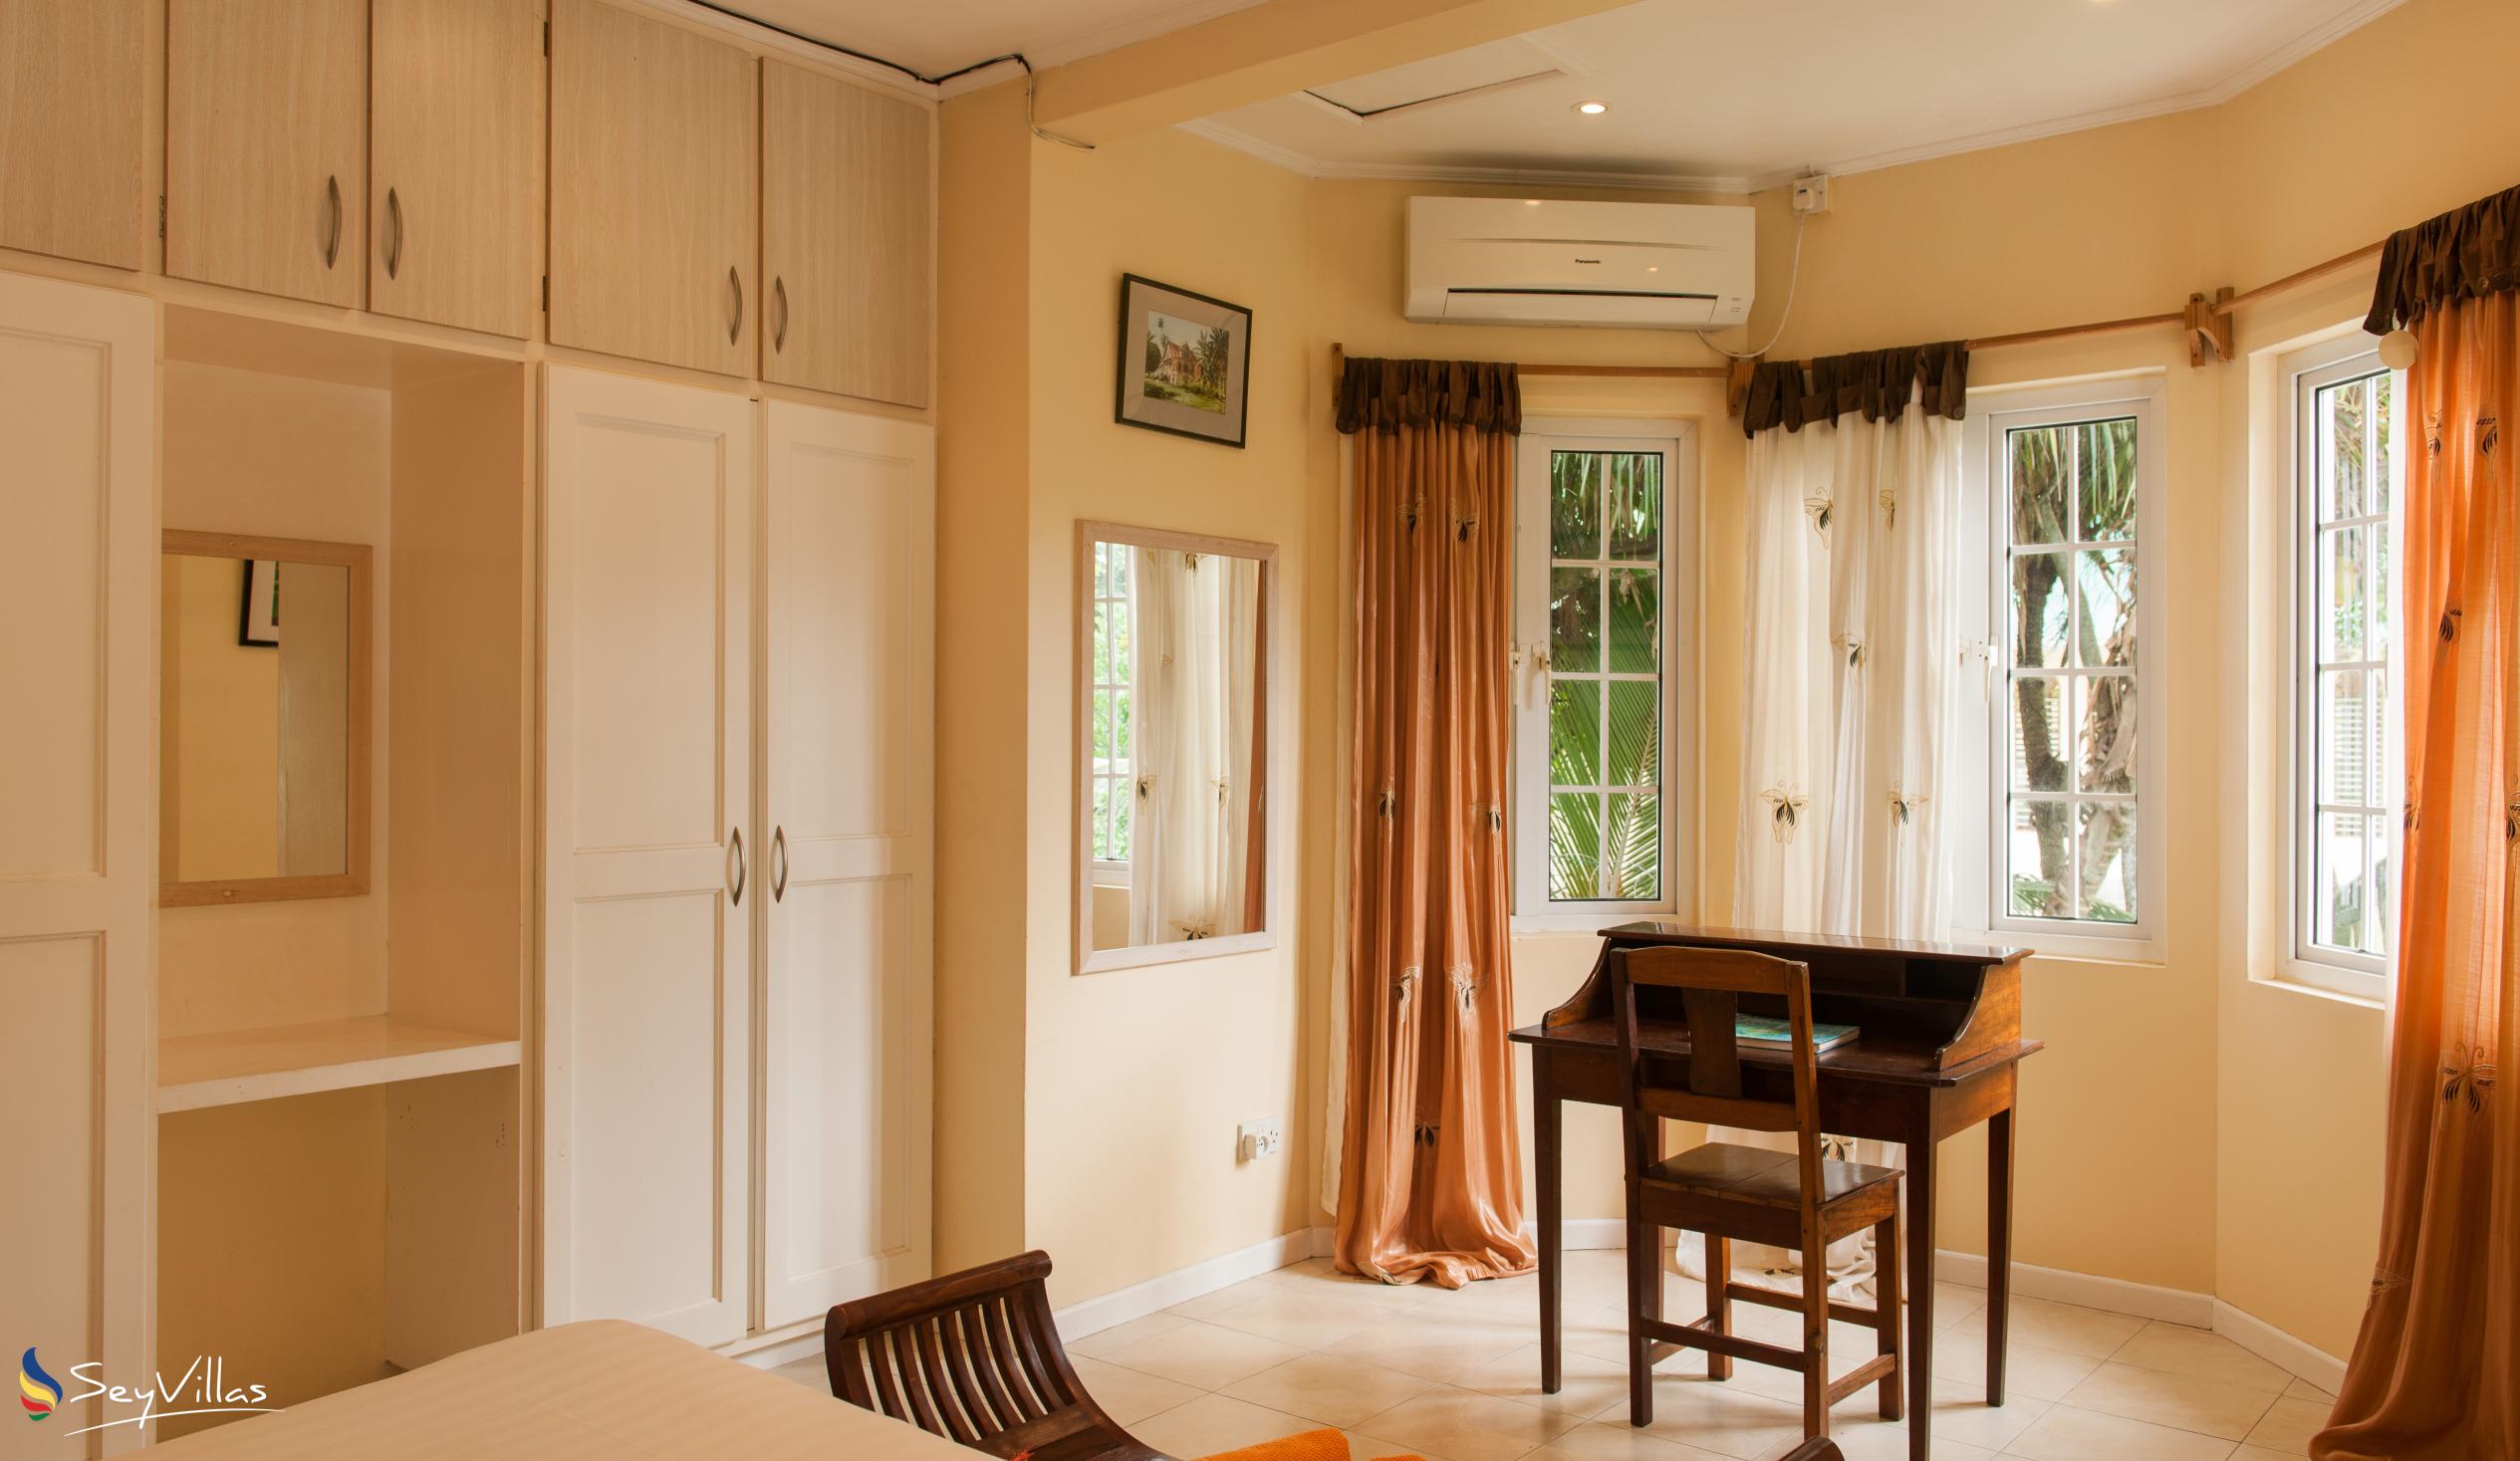 Photo 93: Le Domaine de Bacova - 2-Bedroom Villa - Mahé (Seychelles)